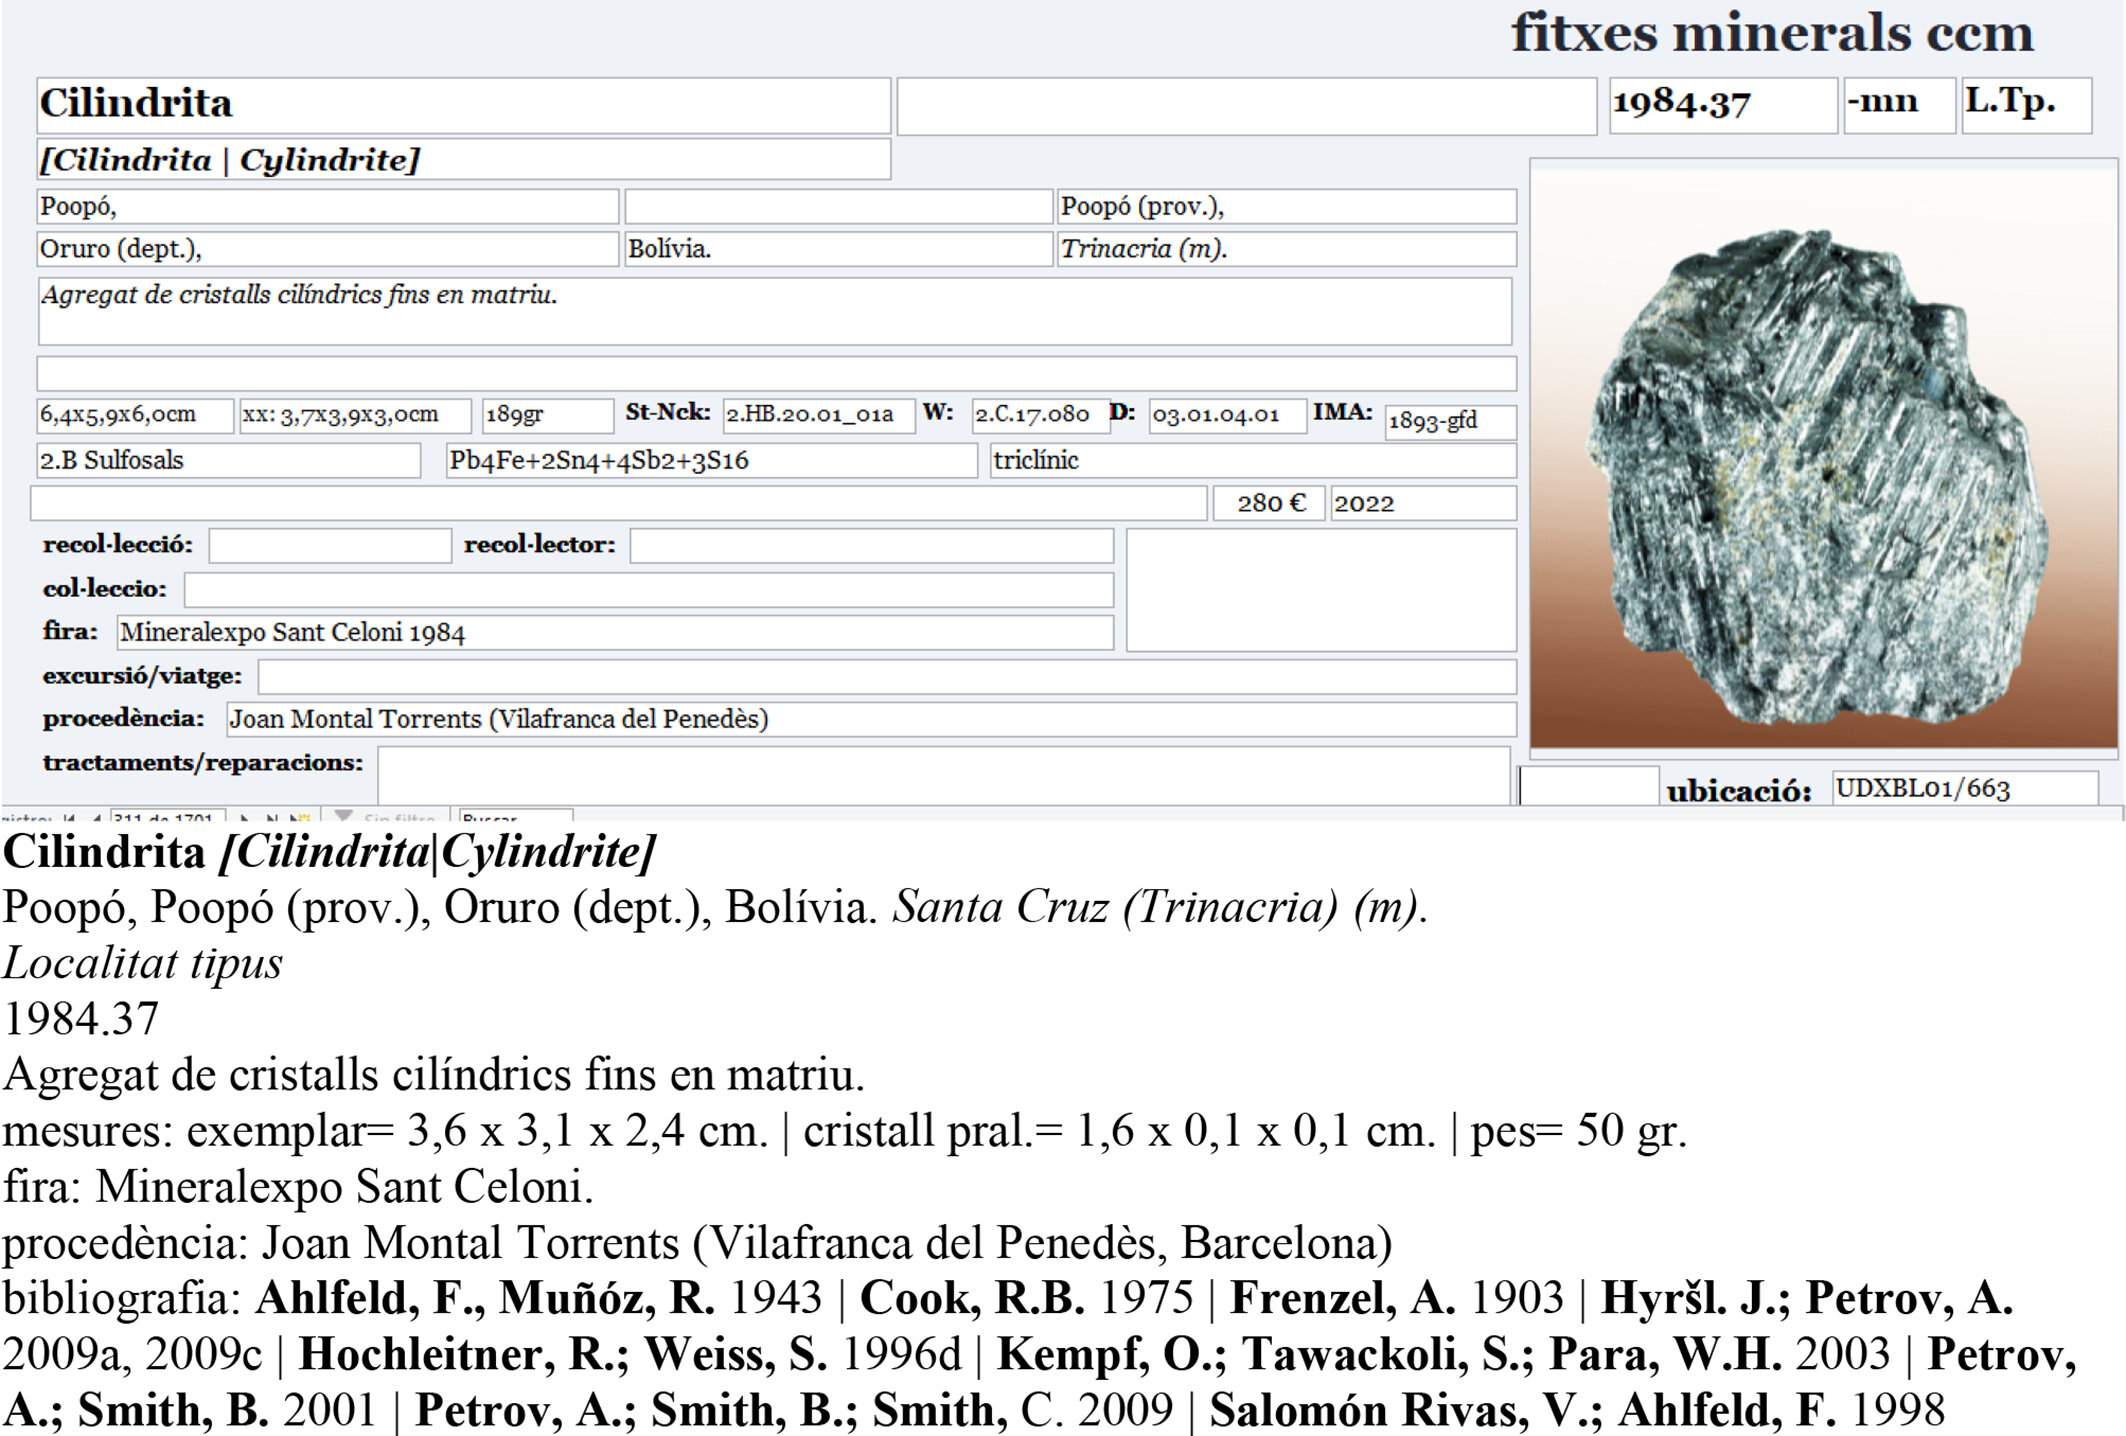 specimens/s_imagesCM/Cilindrite-20CBX160_e.jpg